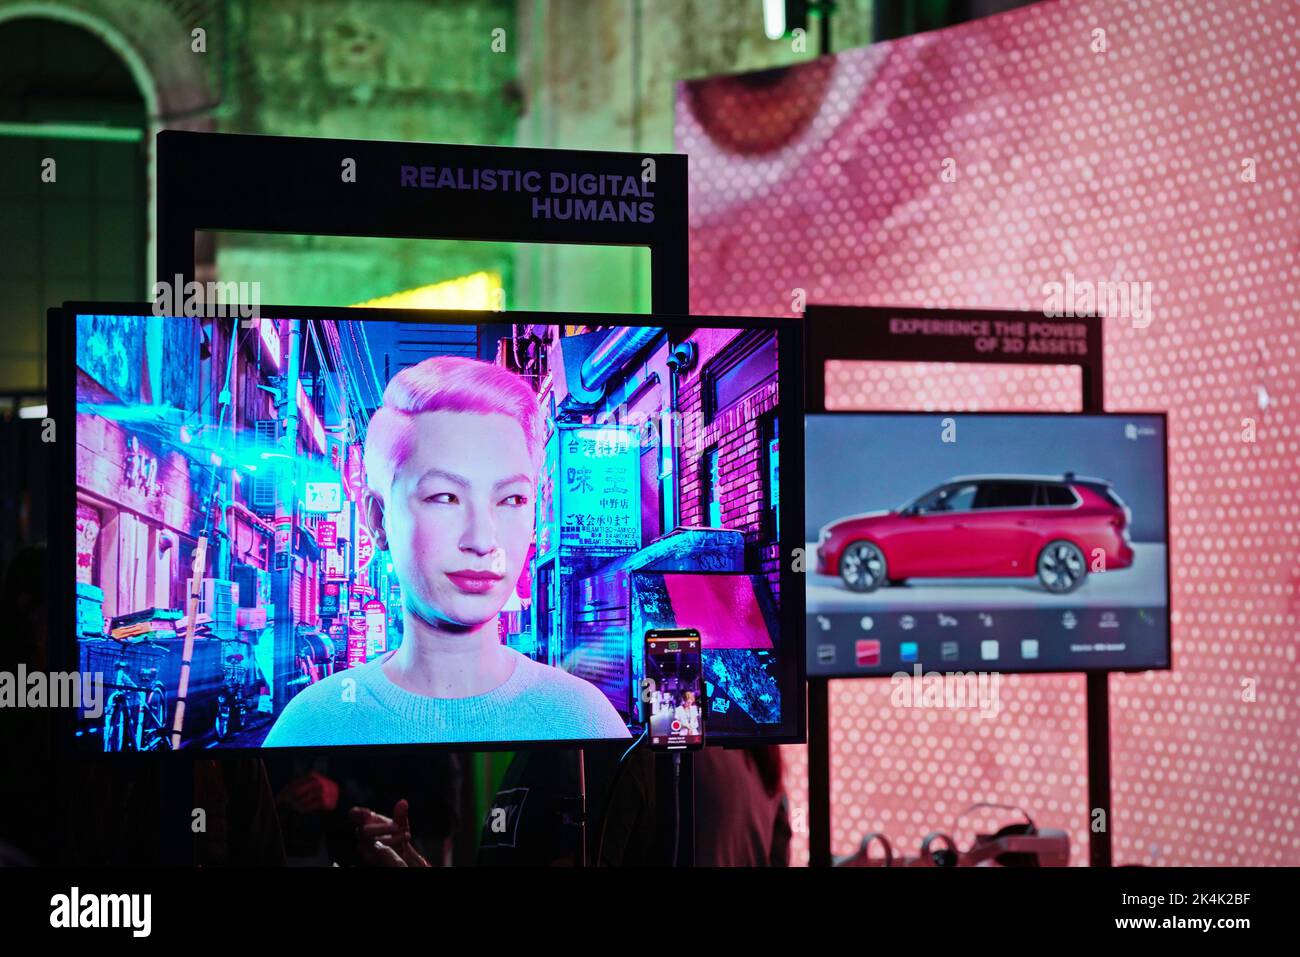 Virtual Reality-Ausstellung. Ein Monitor zeigt das Gesicht hyperrealistischer digitaler Menschen. Turin, Italien - September 2022 Stockfoto